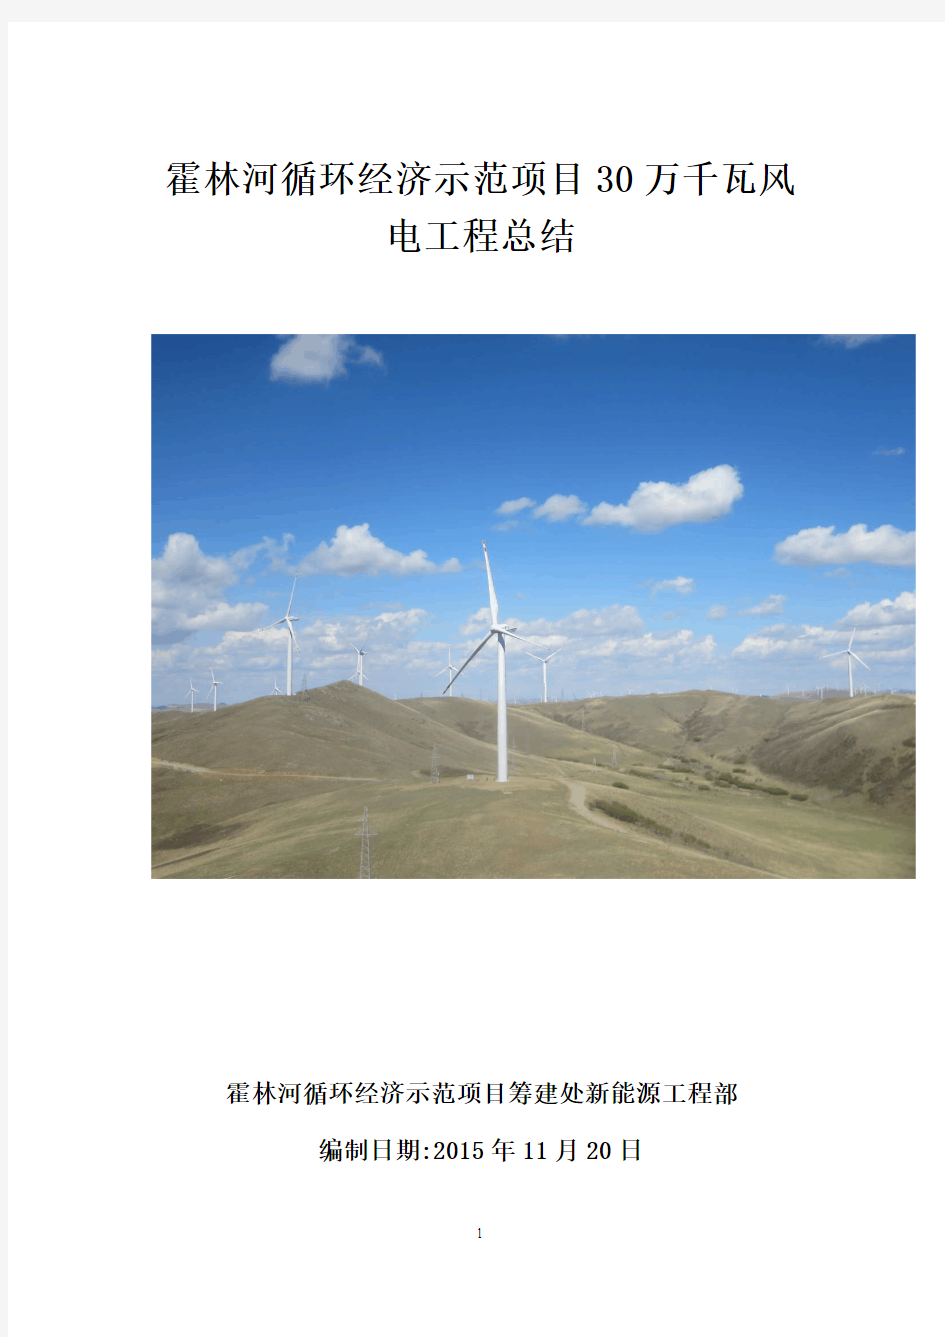 霍林河循环经济示范工程风电项目工程总结资料